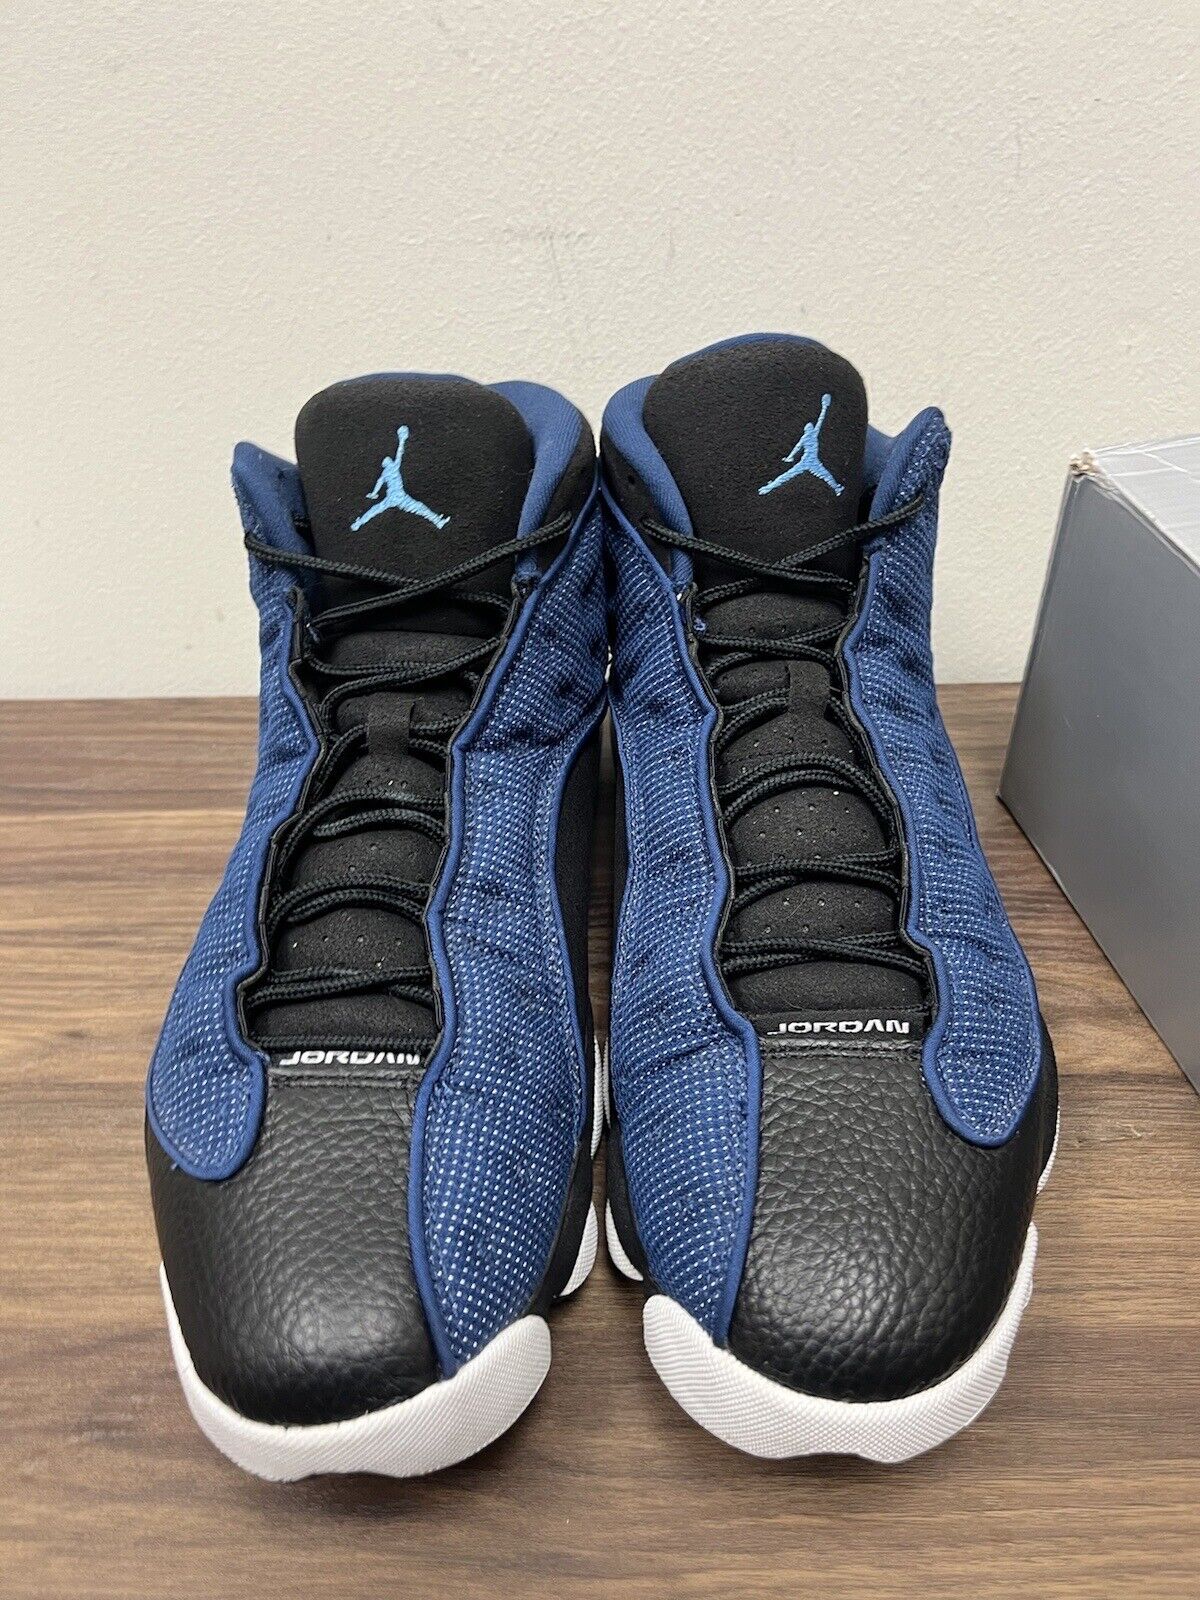 Nike Air Jordan 13 Brave Blue Size 12 Dj5982-400 OG XIII